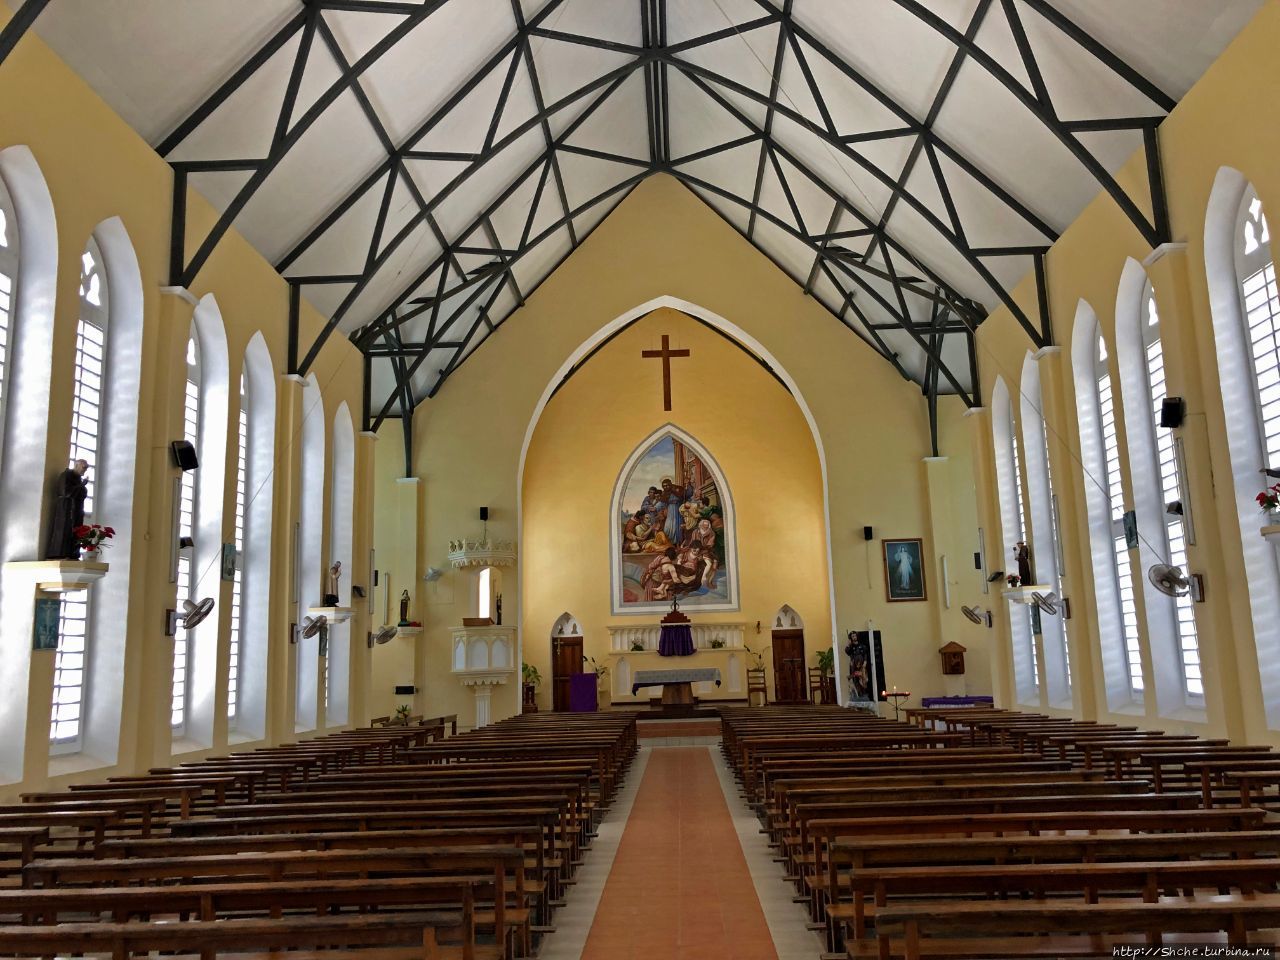 Церковь святого Роха Бель-Омбр, Сейшельские острова